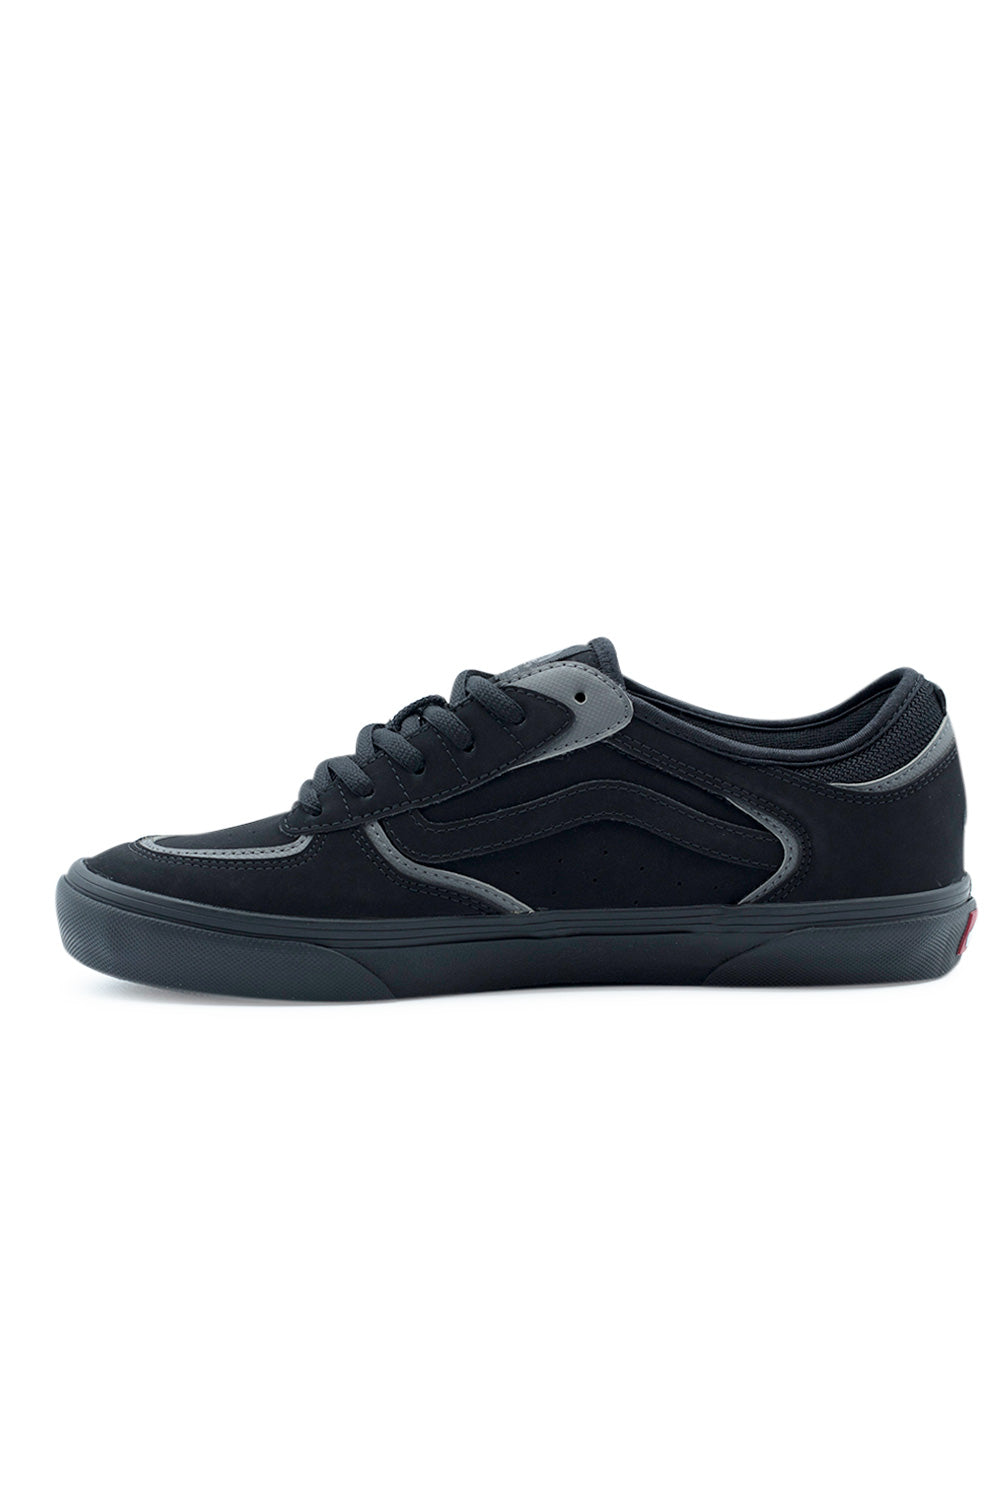 Vans Rowley (Skate) Shoe Black / Pewter - BONKERS